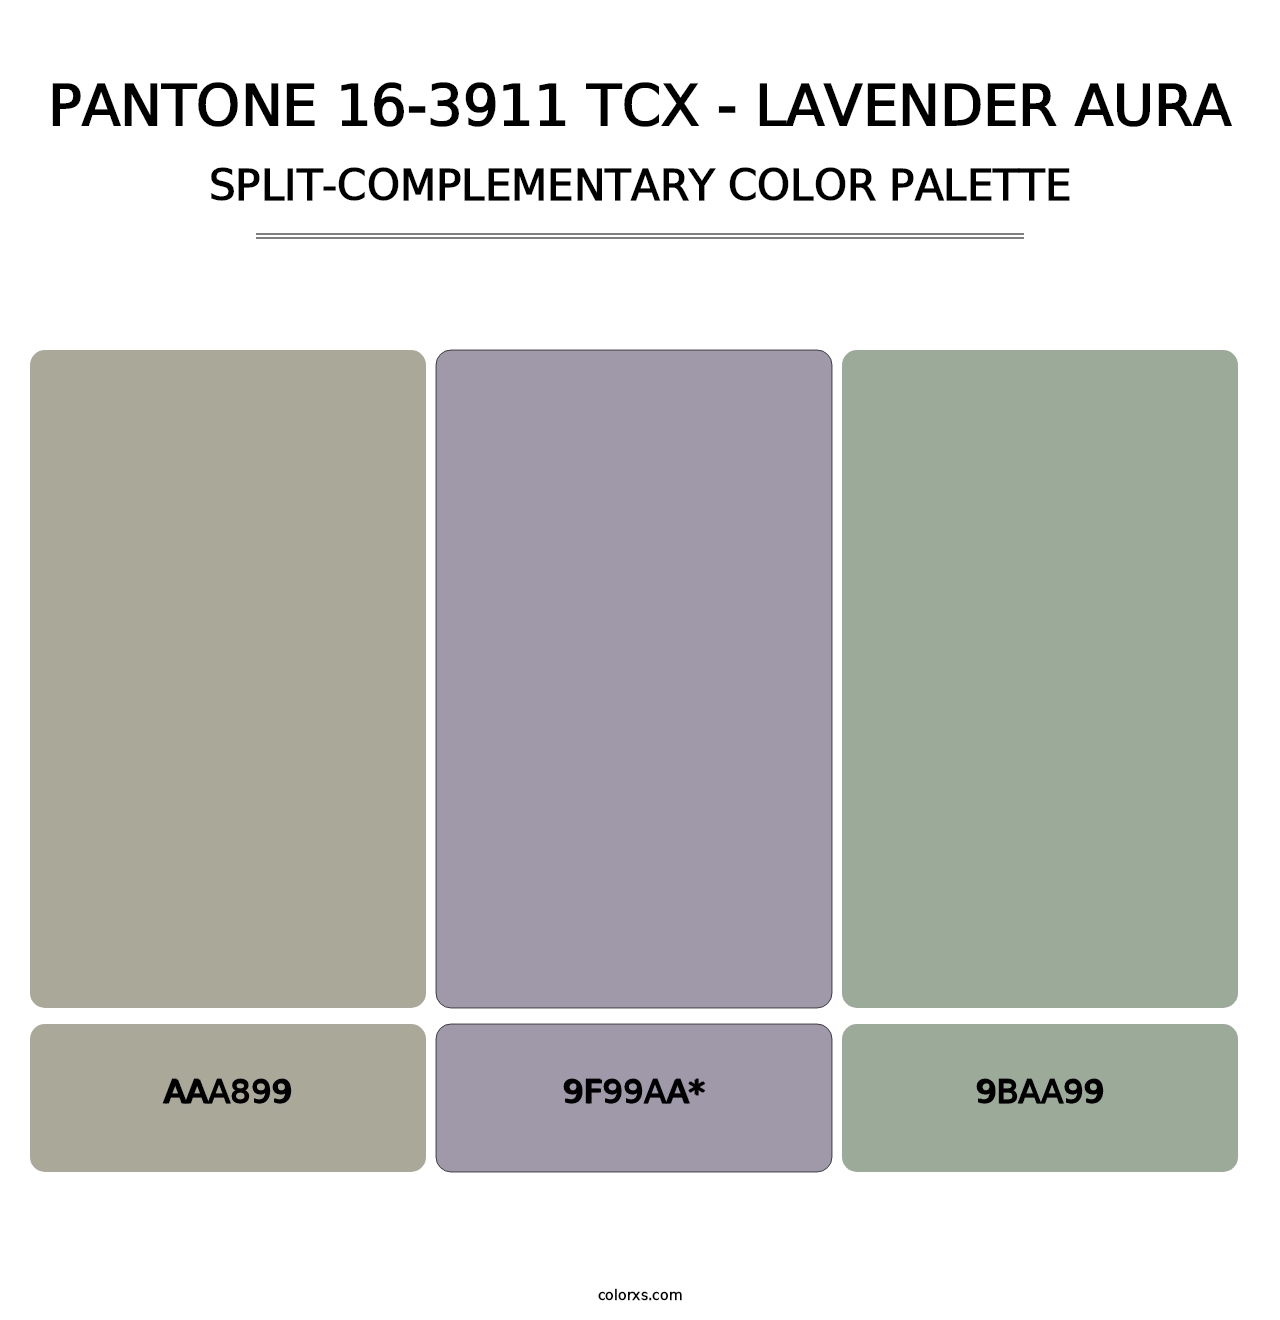 PANTONE 16-3911 TCX - Lavender Aura - Split-Complementary Color Palette